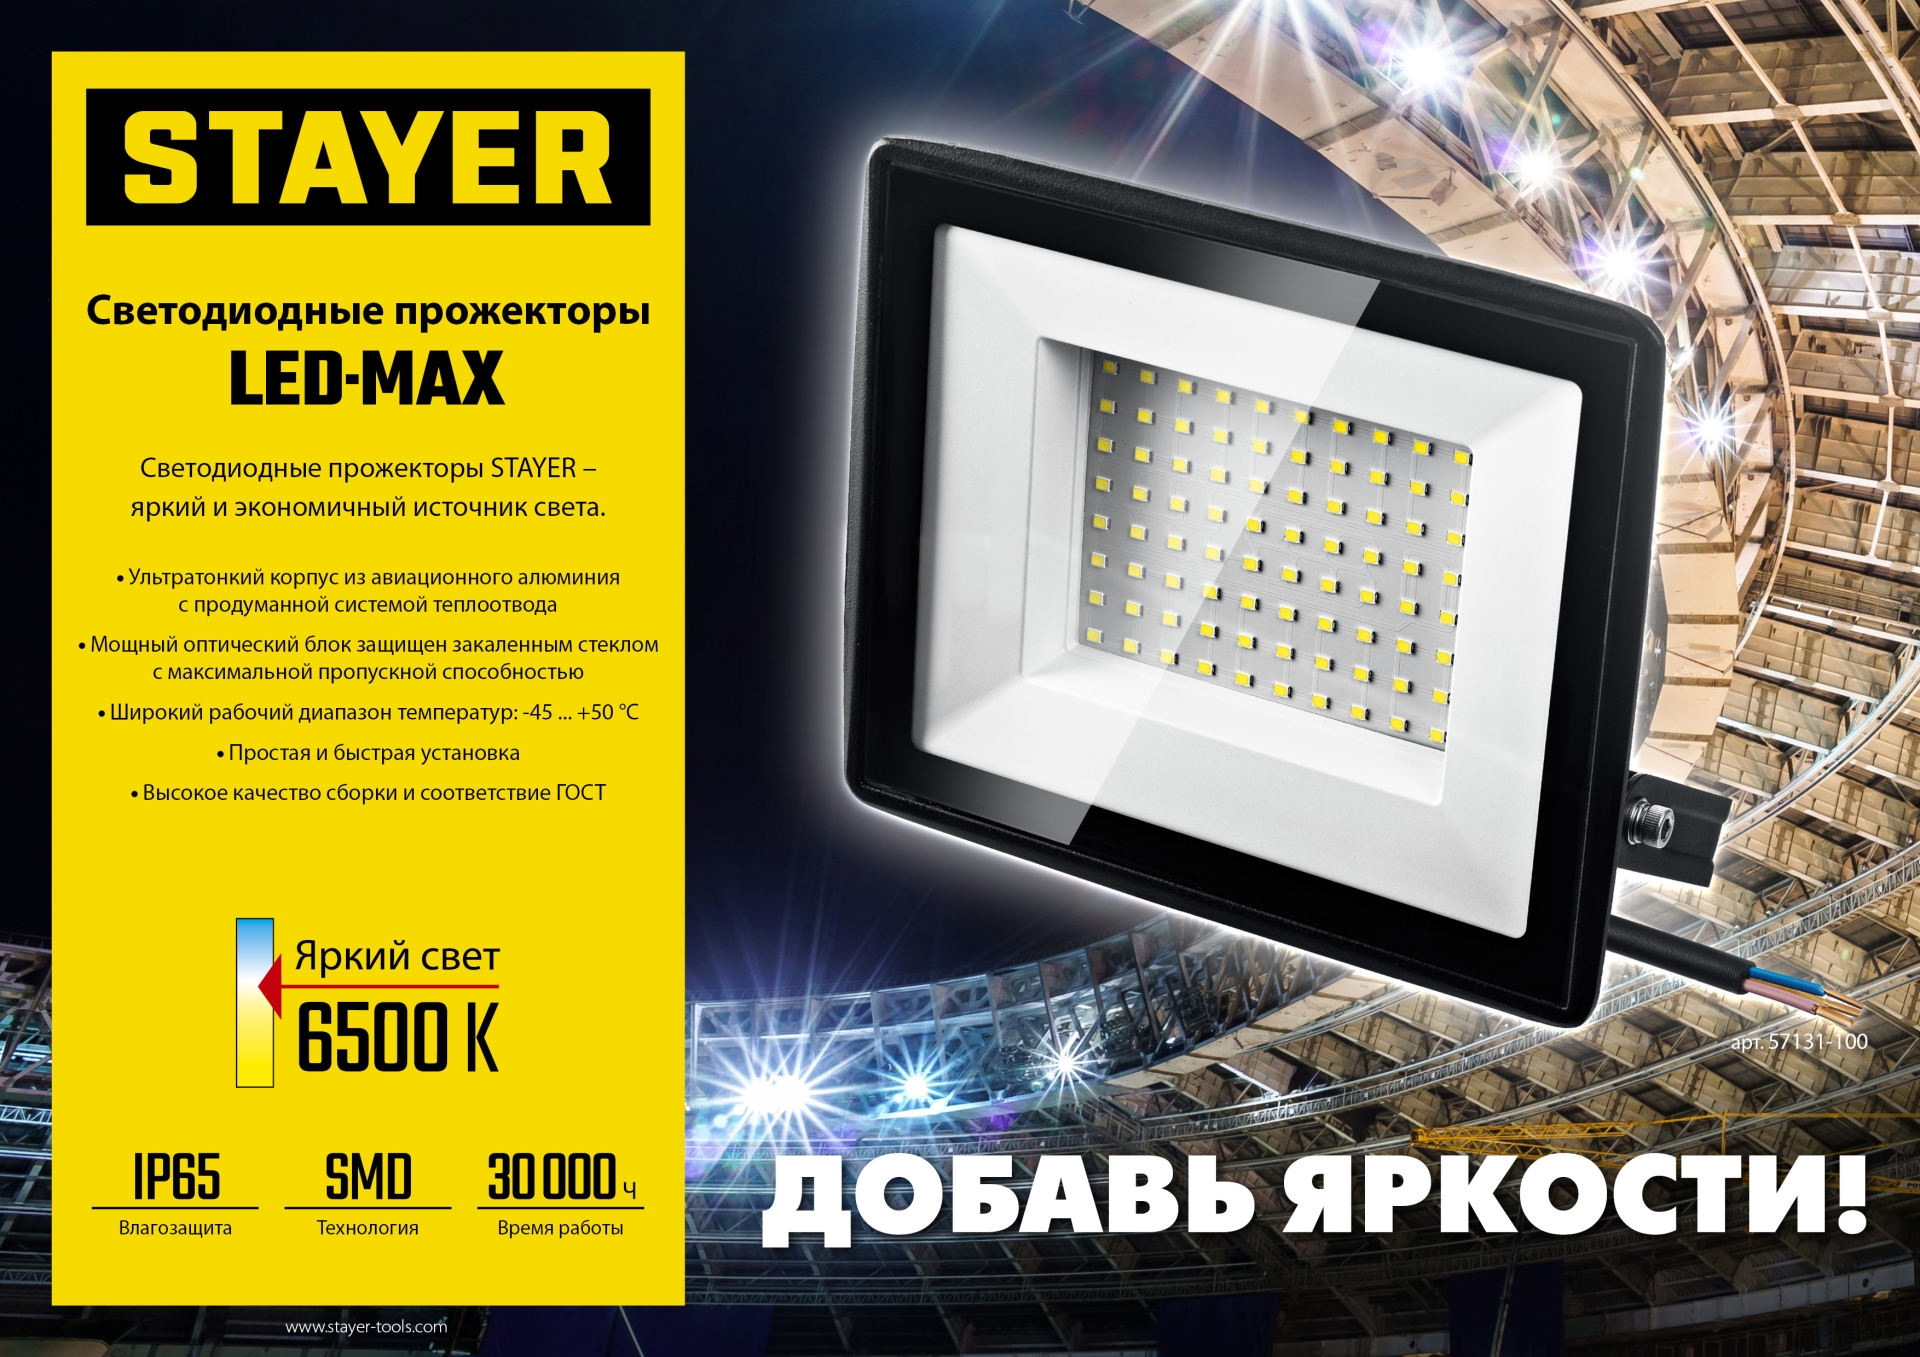 STAYER LED-MAX, 150 Вт, 6500K, IP 65, светодиодный прожектор (57131-150)